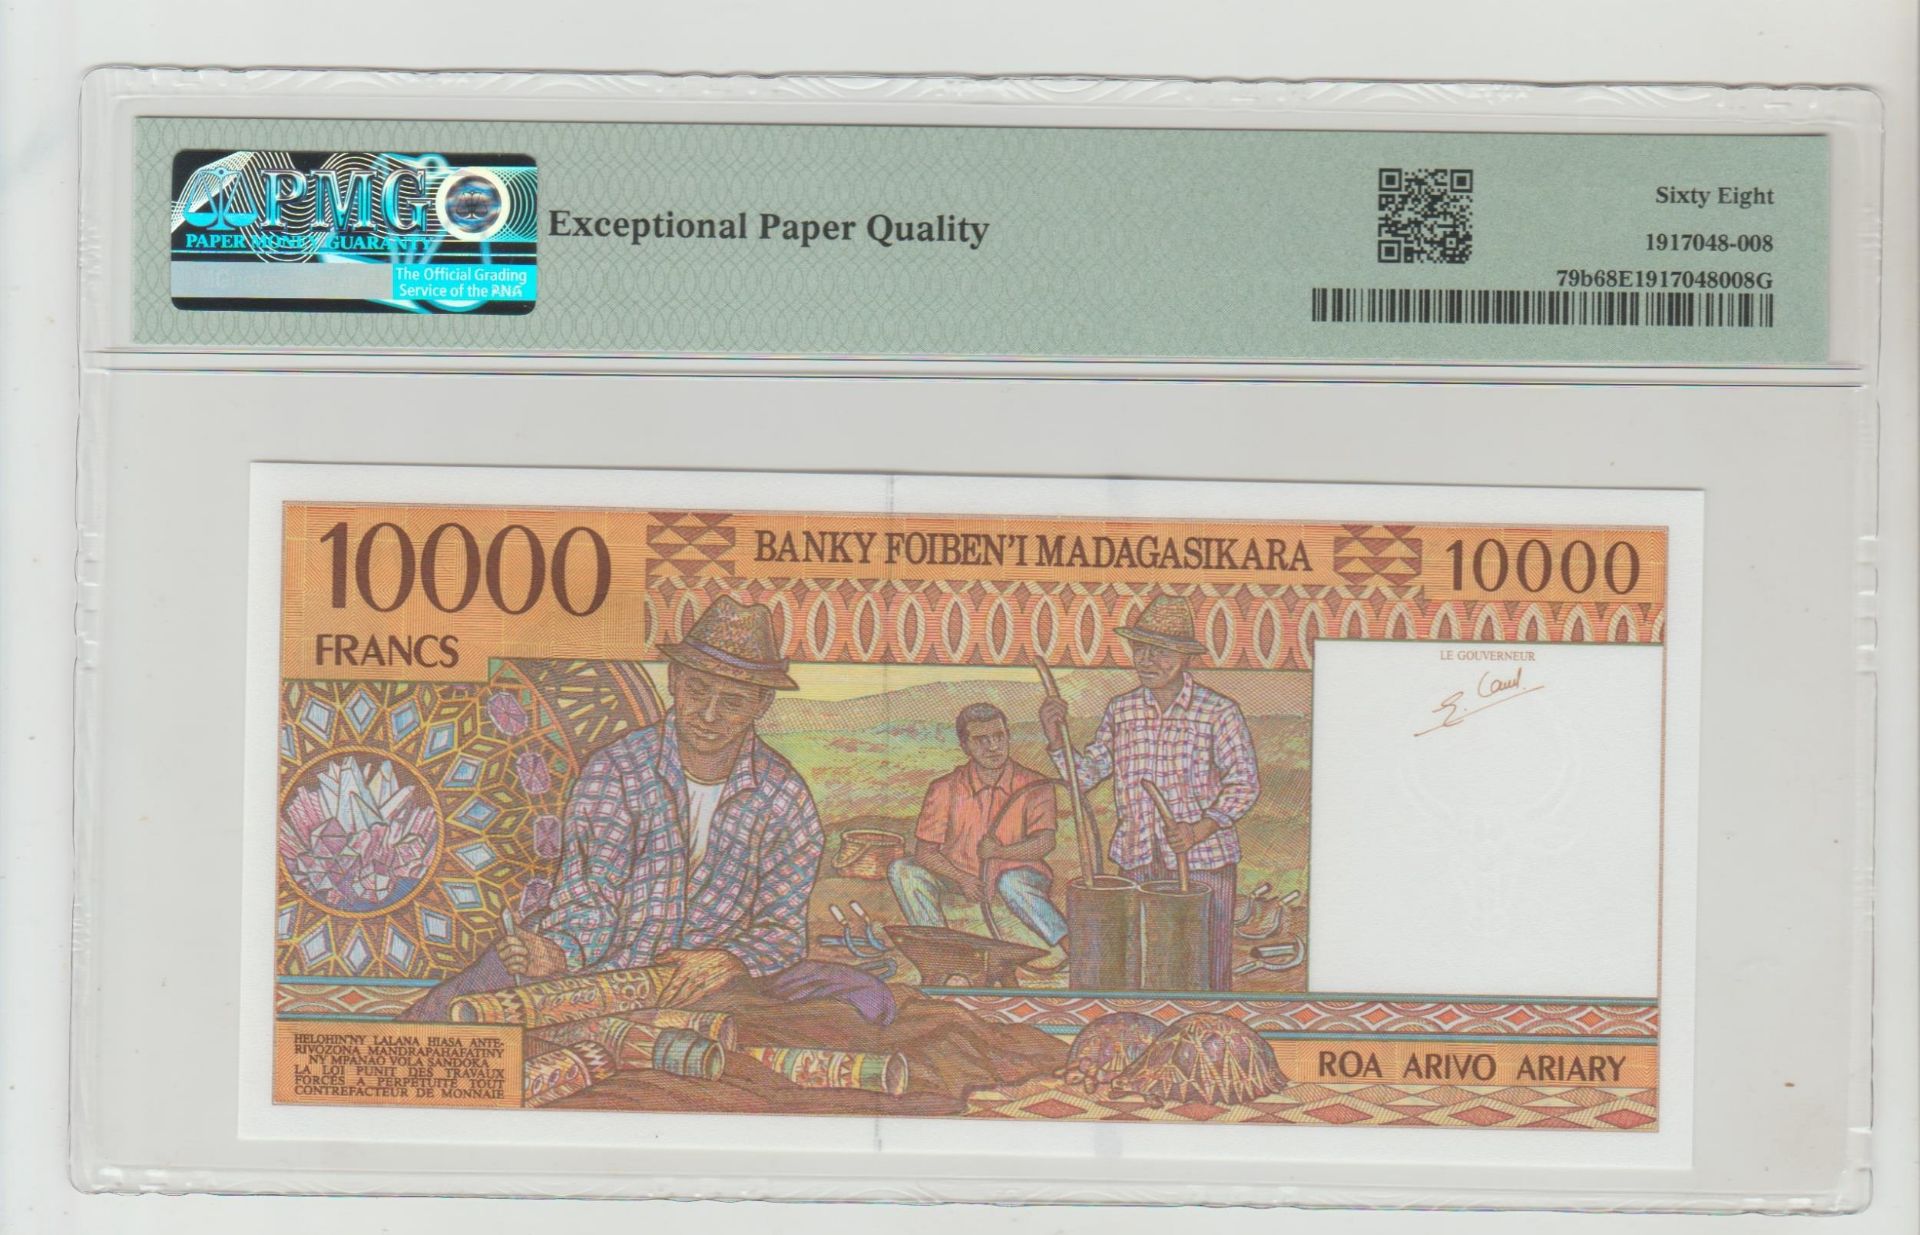 Madagaskar, 10,000 Francs = 2000 Ariary, 1995 year - Image 2 of 2